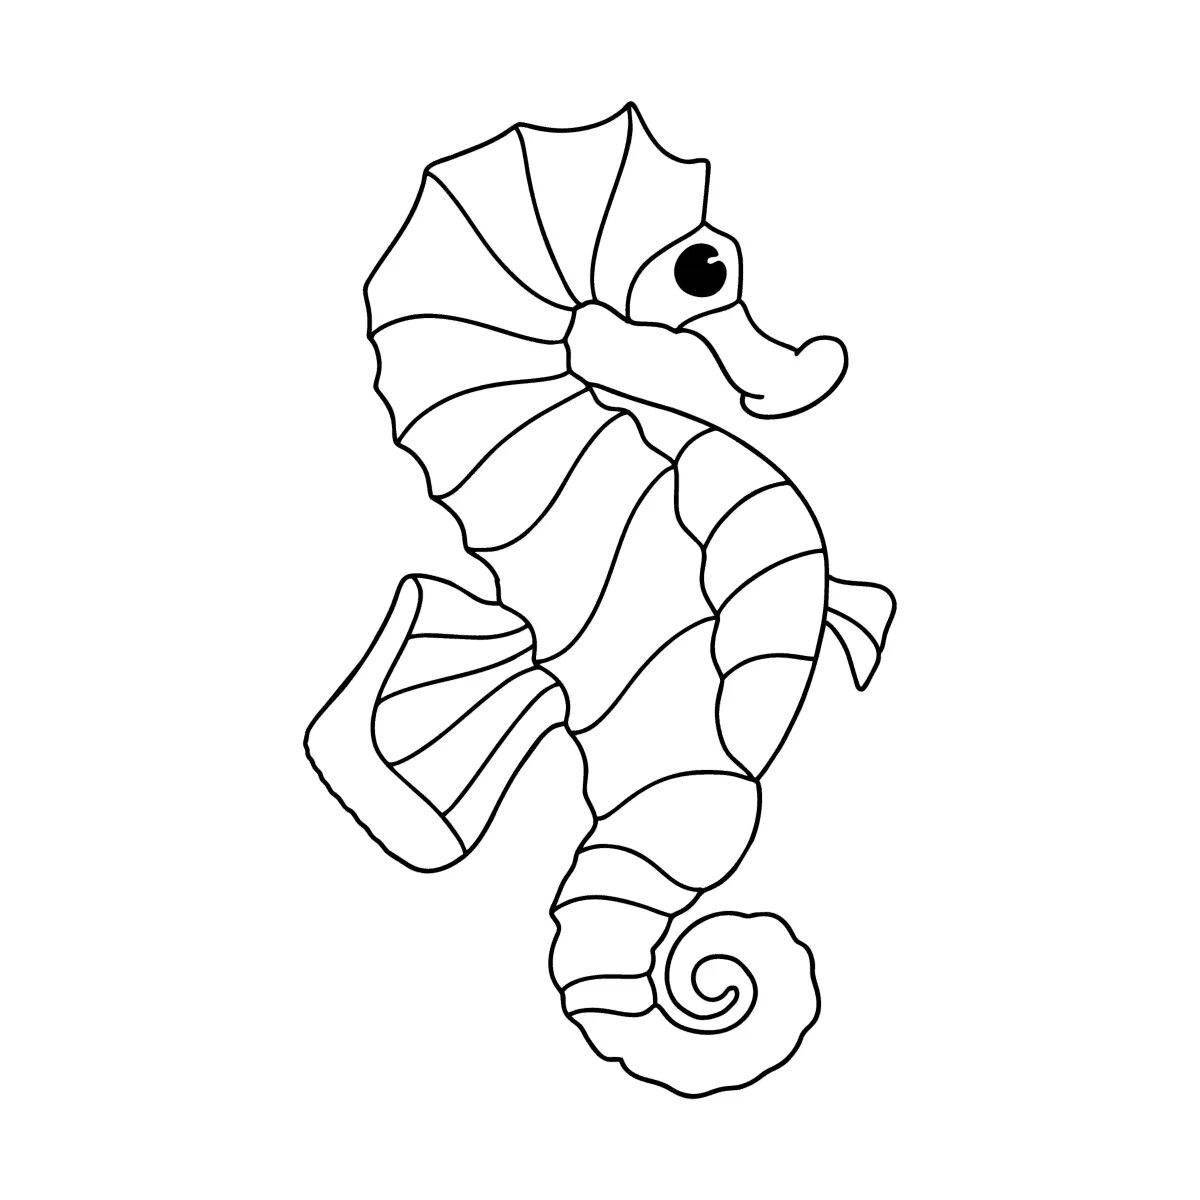 Увлекательная раскраска «морской конек» для детей